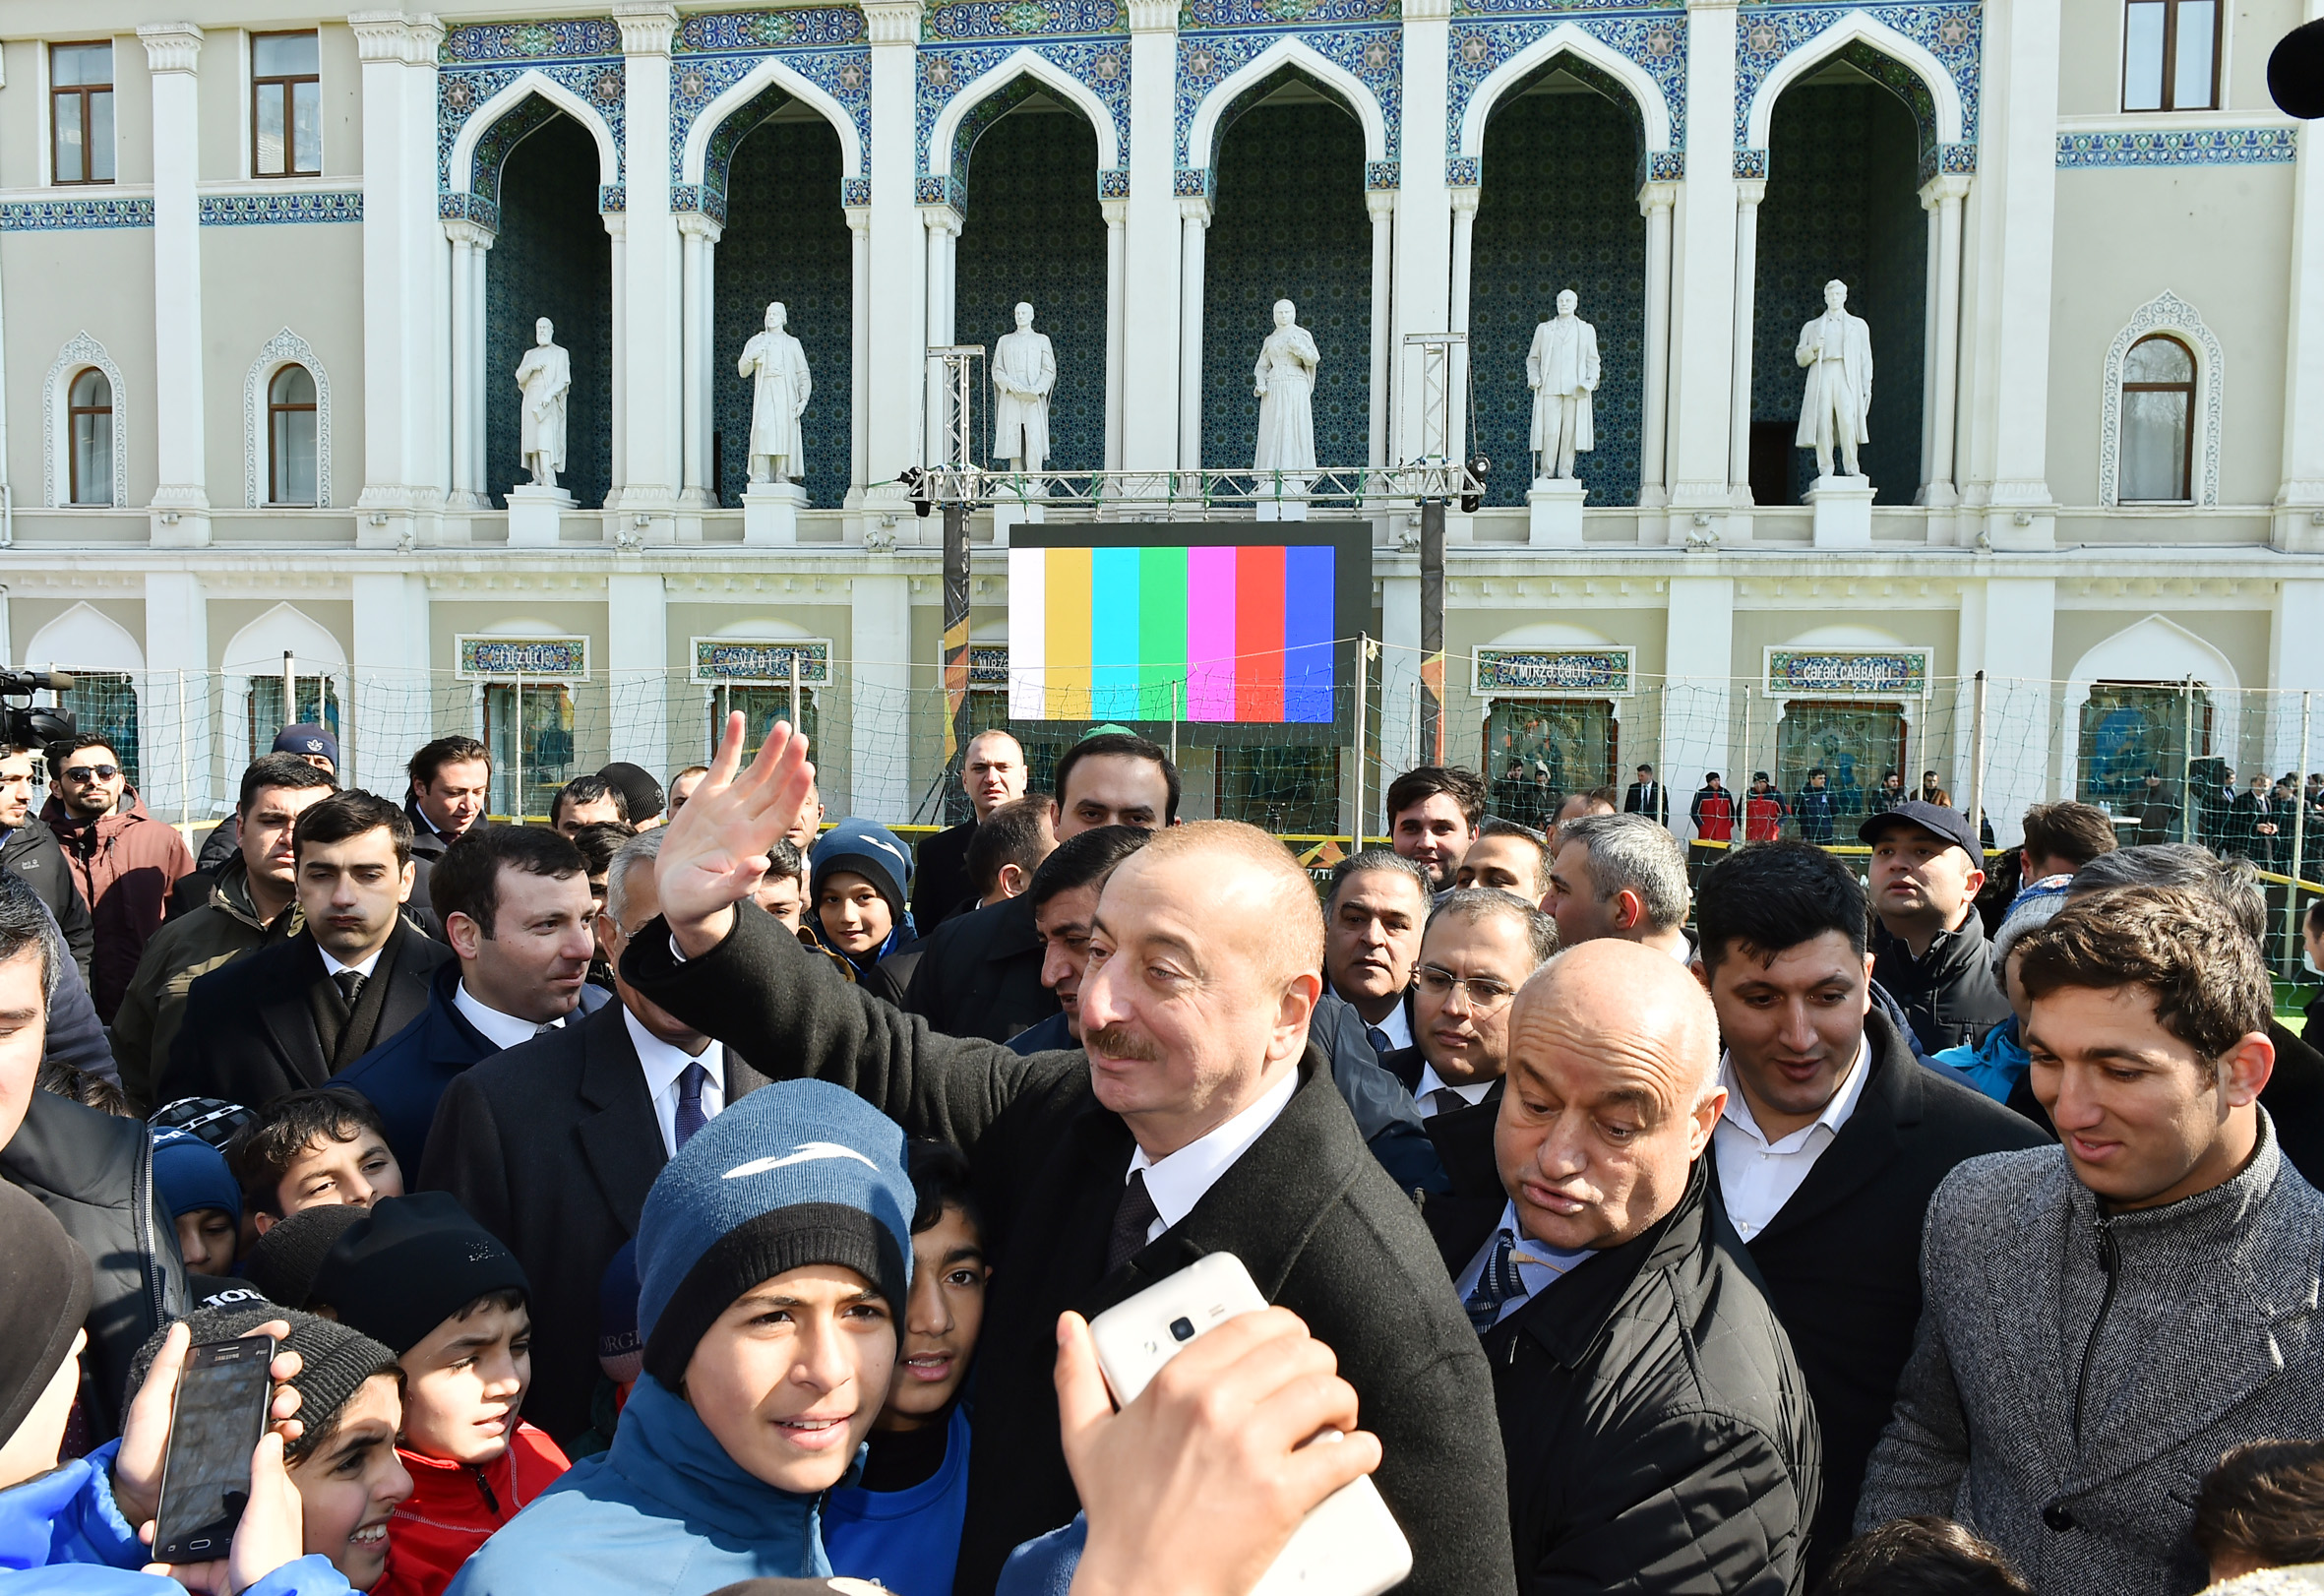 Новости азербайджана сегодня срочно видео